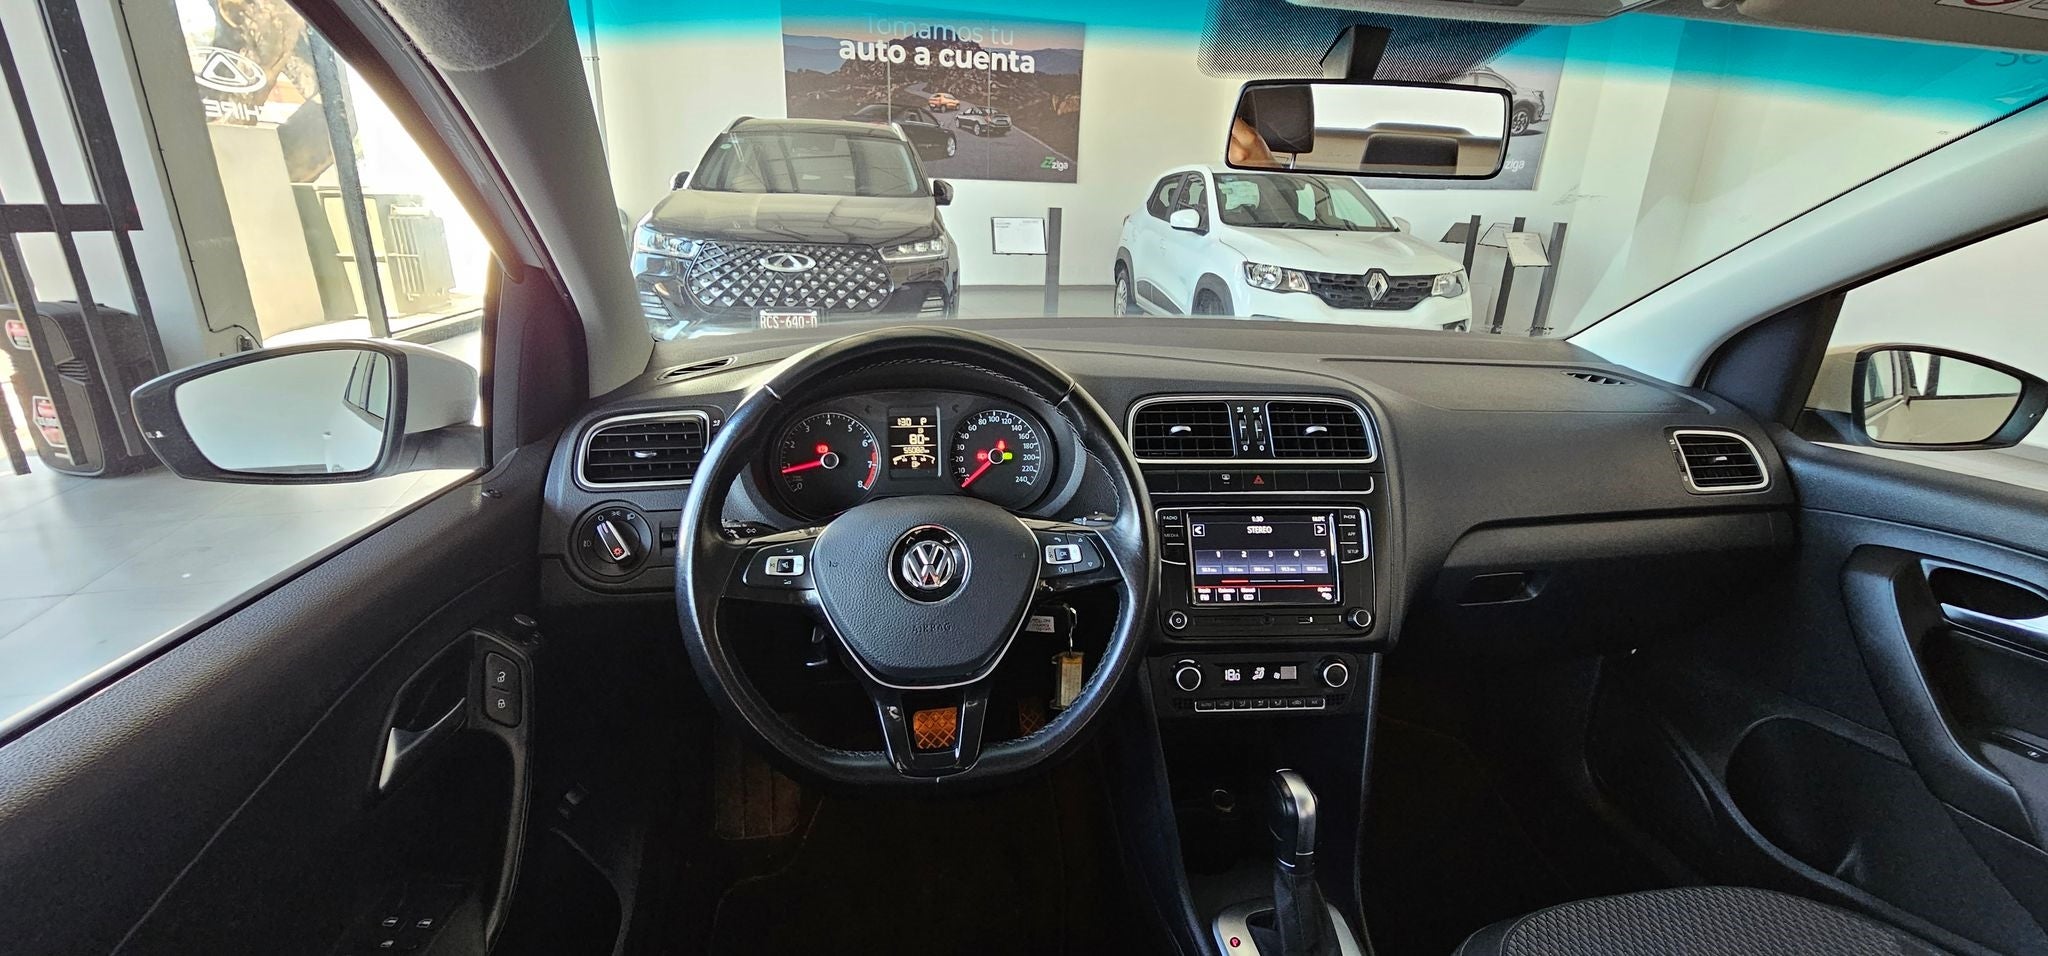 2021 Volkswagen Vento 1.6 Comfortline Plus At